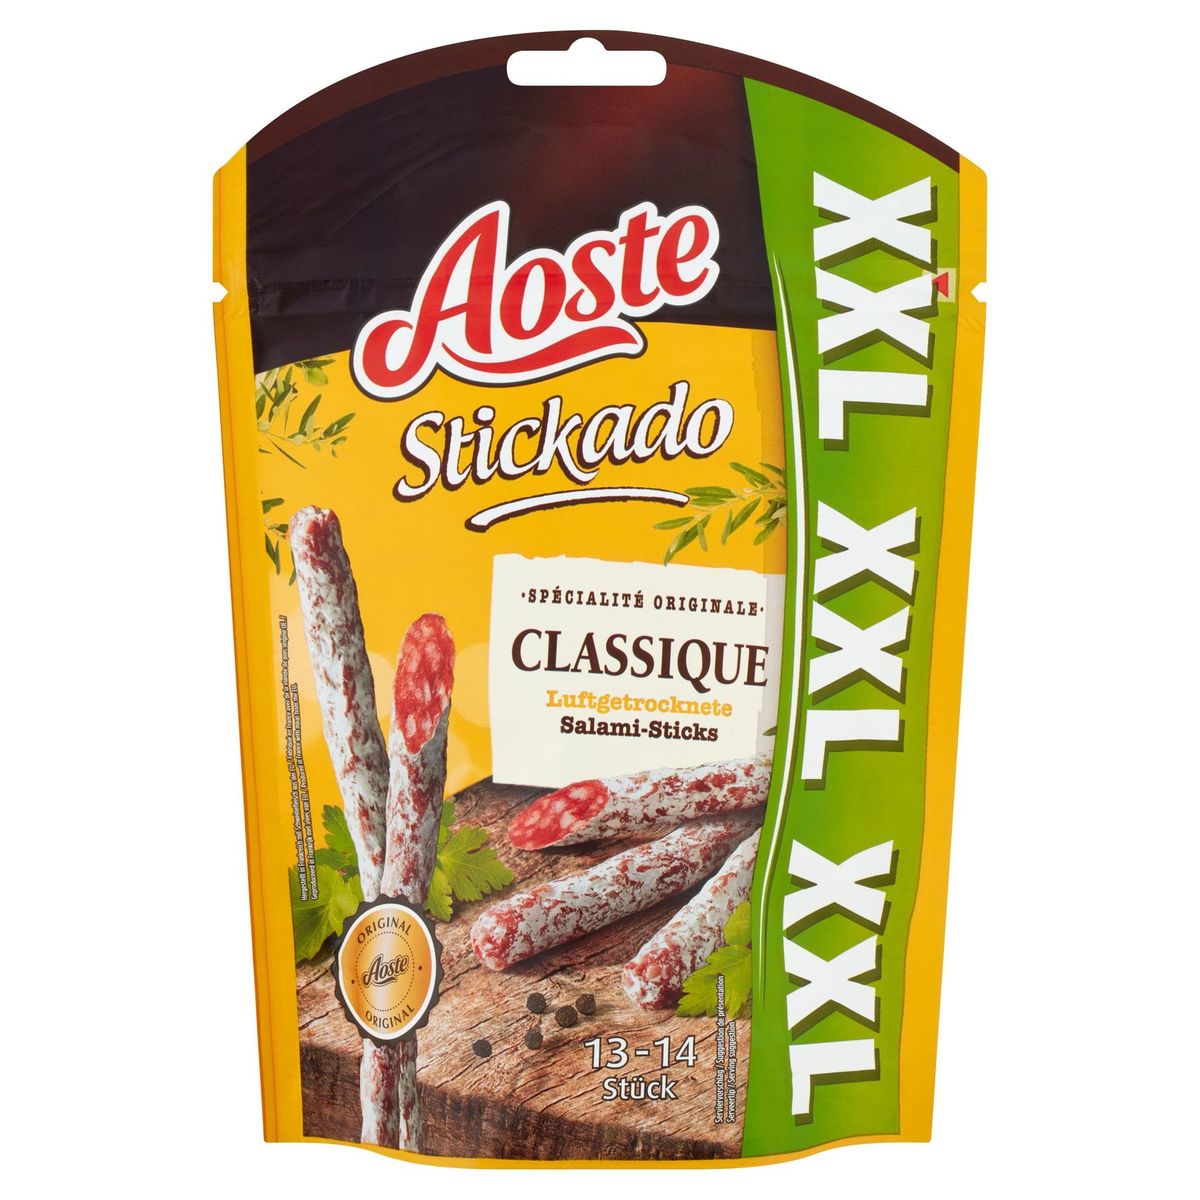 Aoste Stickado Classique Salami-Sticks XXL 140 g